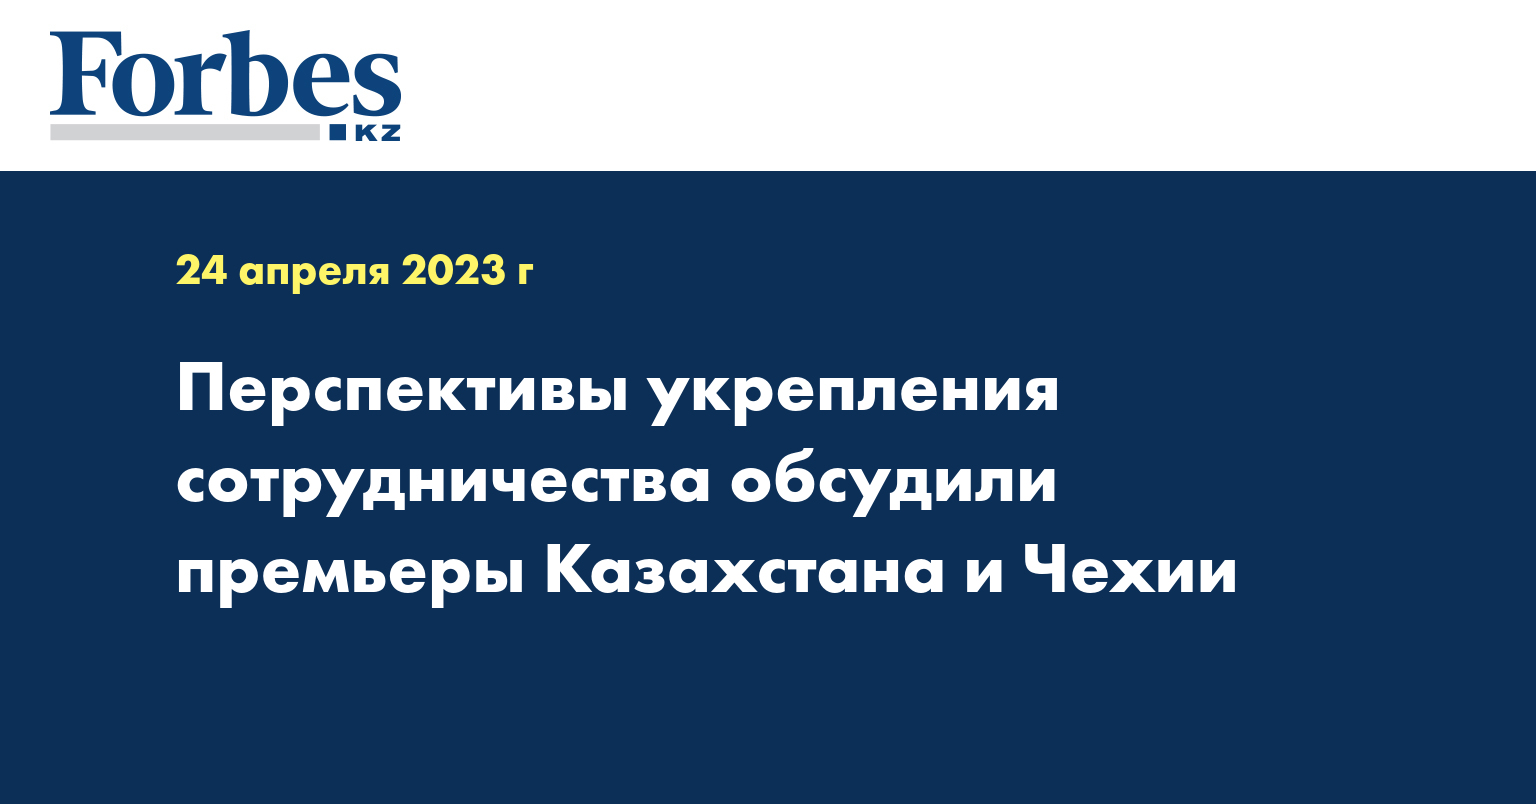 Перспективы укрепления сотрудничества обсудили премьеры Казахстана и Чехии